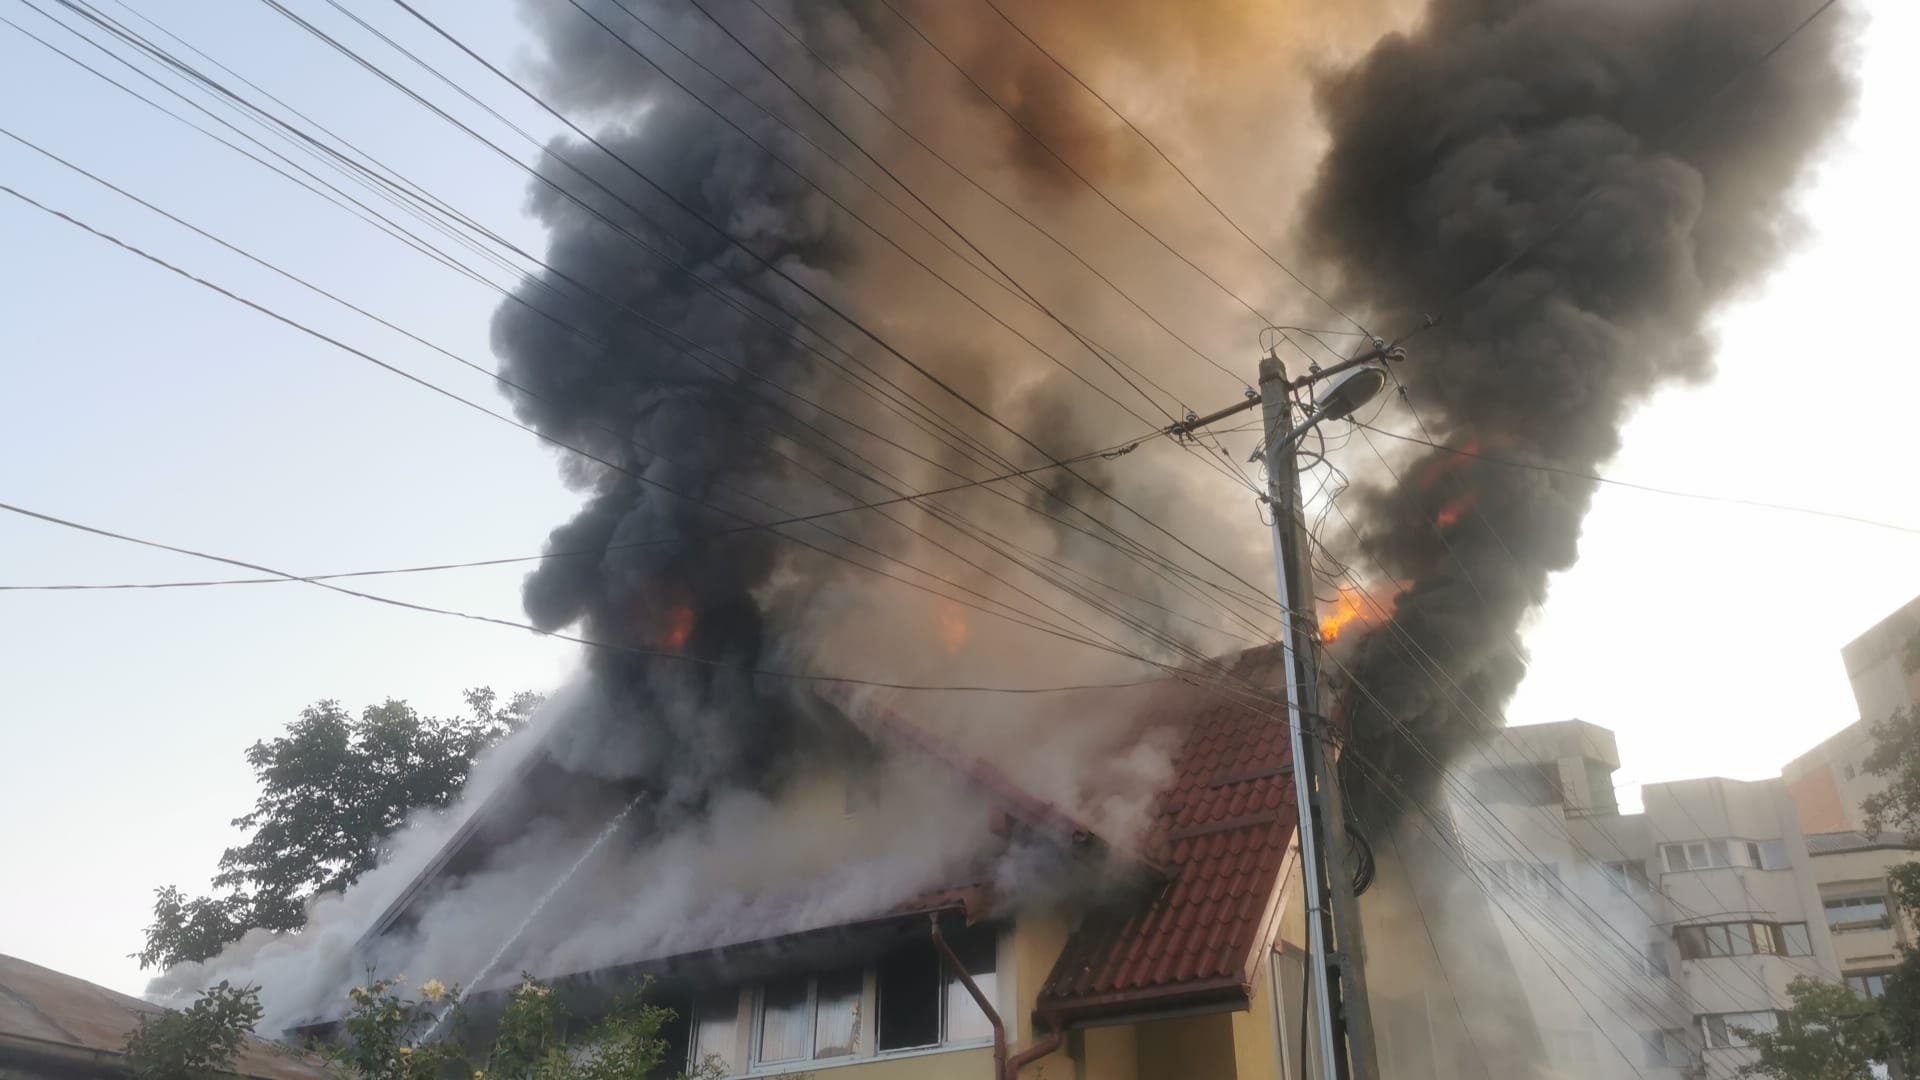  VIDEO: Incendiu puternic la o locuinţă din municipiul Iasi, strada Cireşica